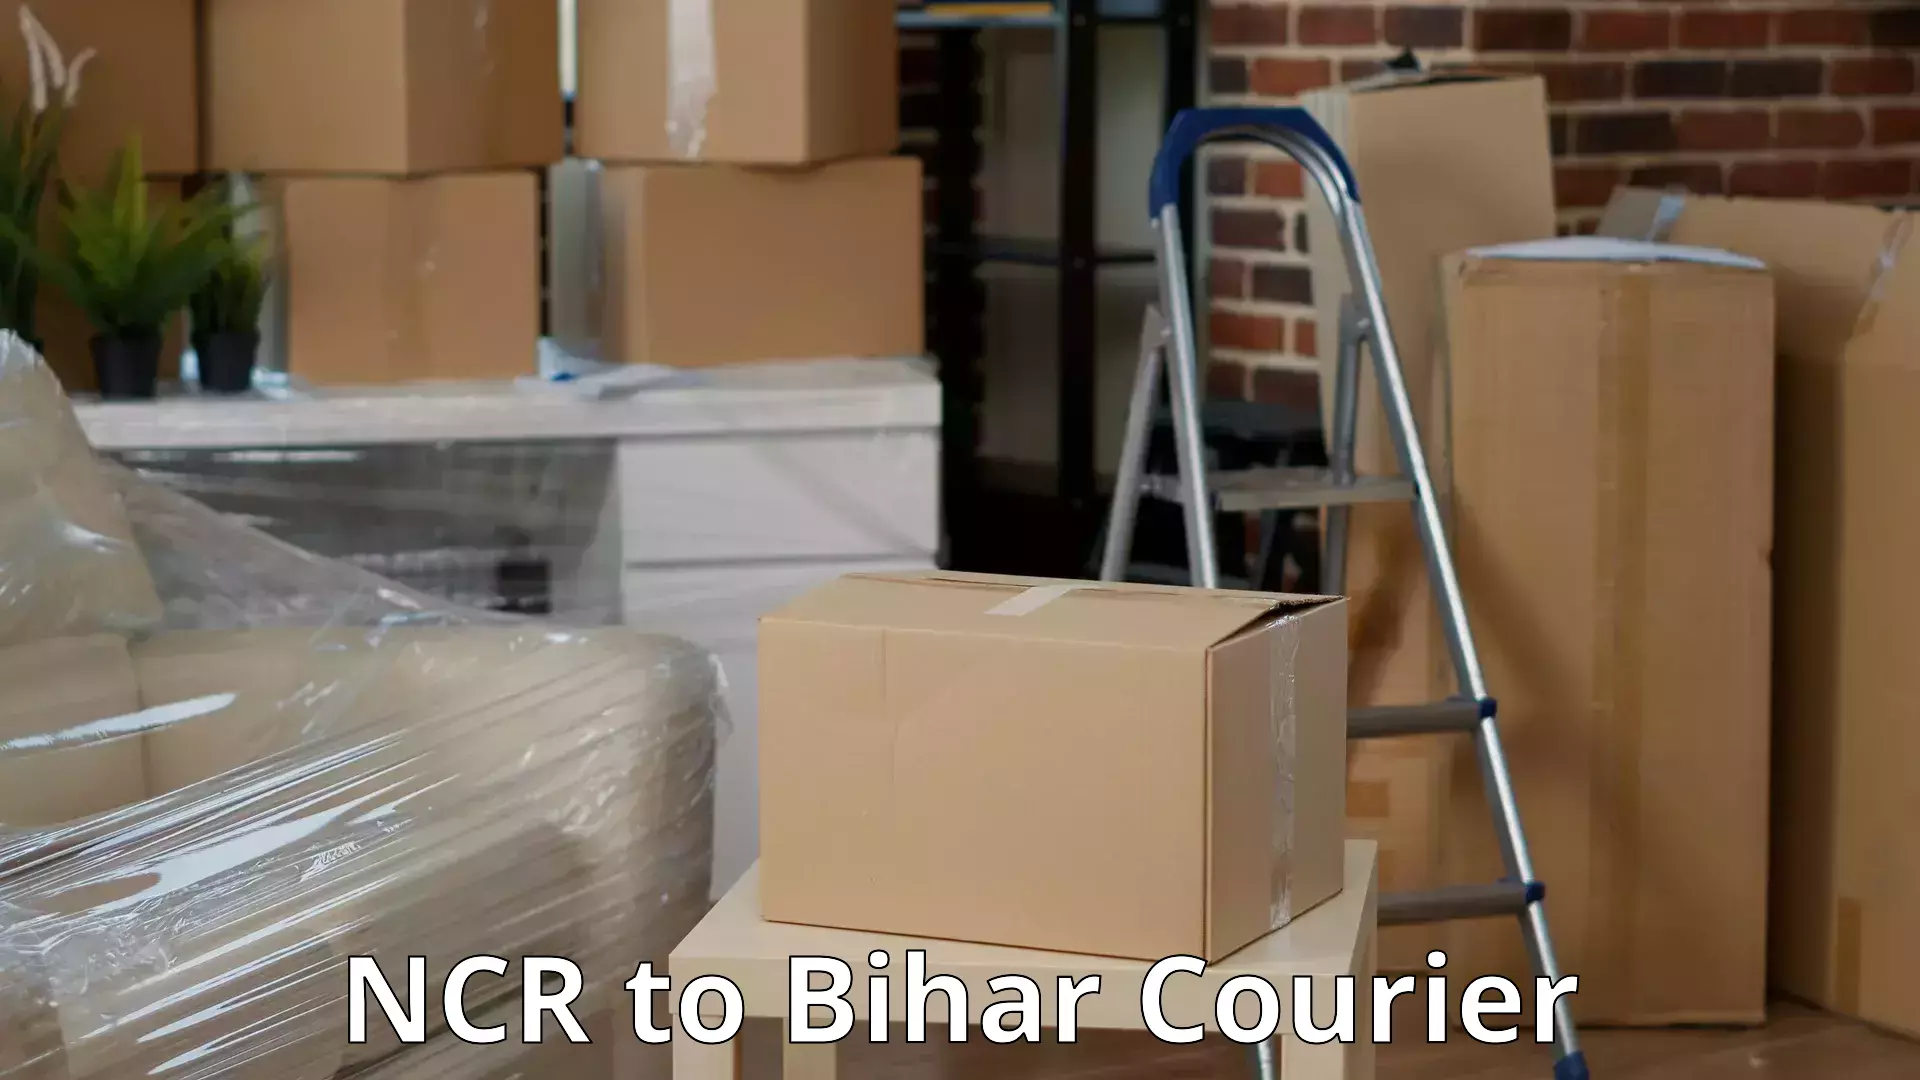 Door-to-door relocation services NCR to Bihar